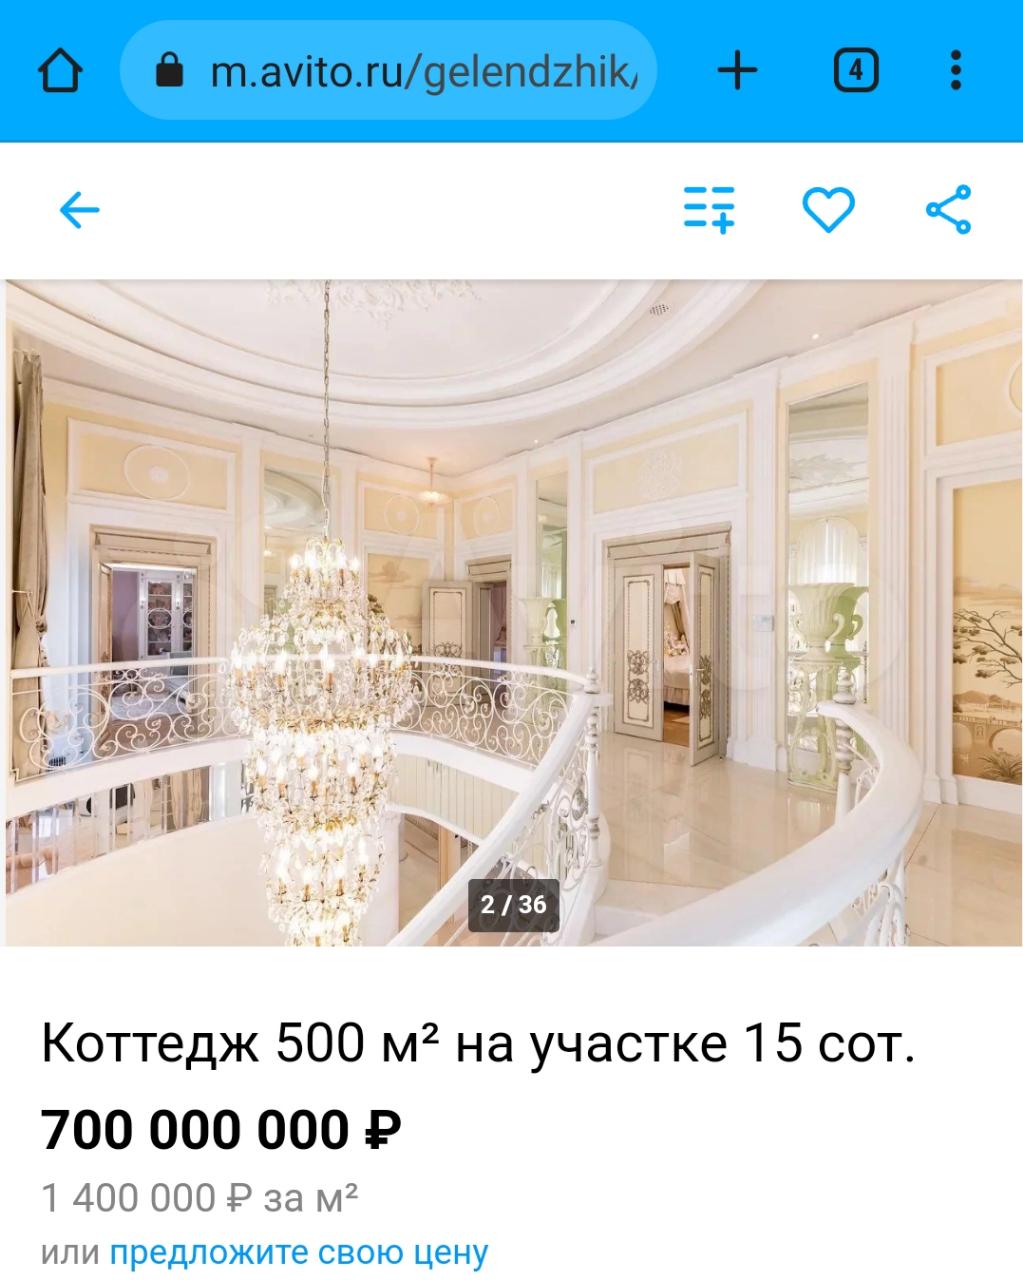 В Геленджике за 700 миллионов выставили на продажу домовладение Мантурова?